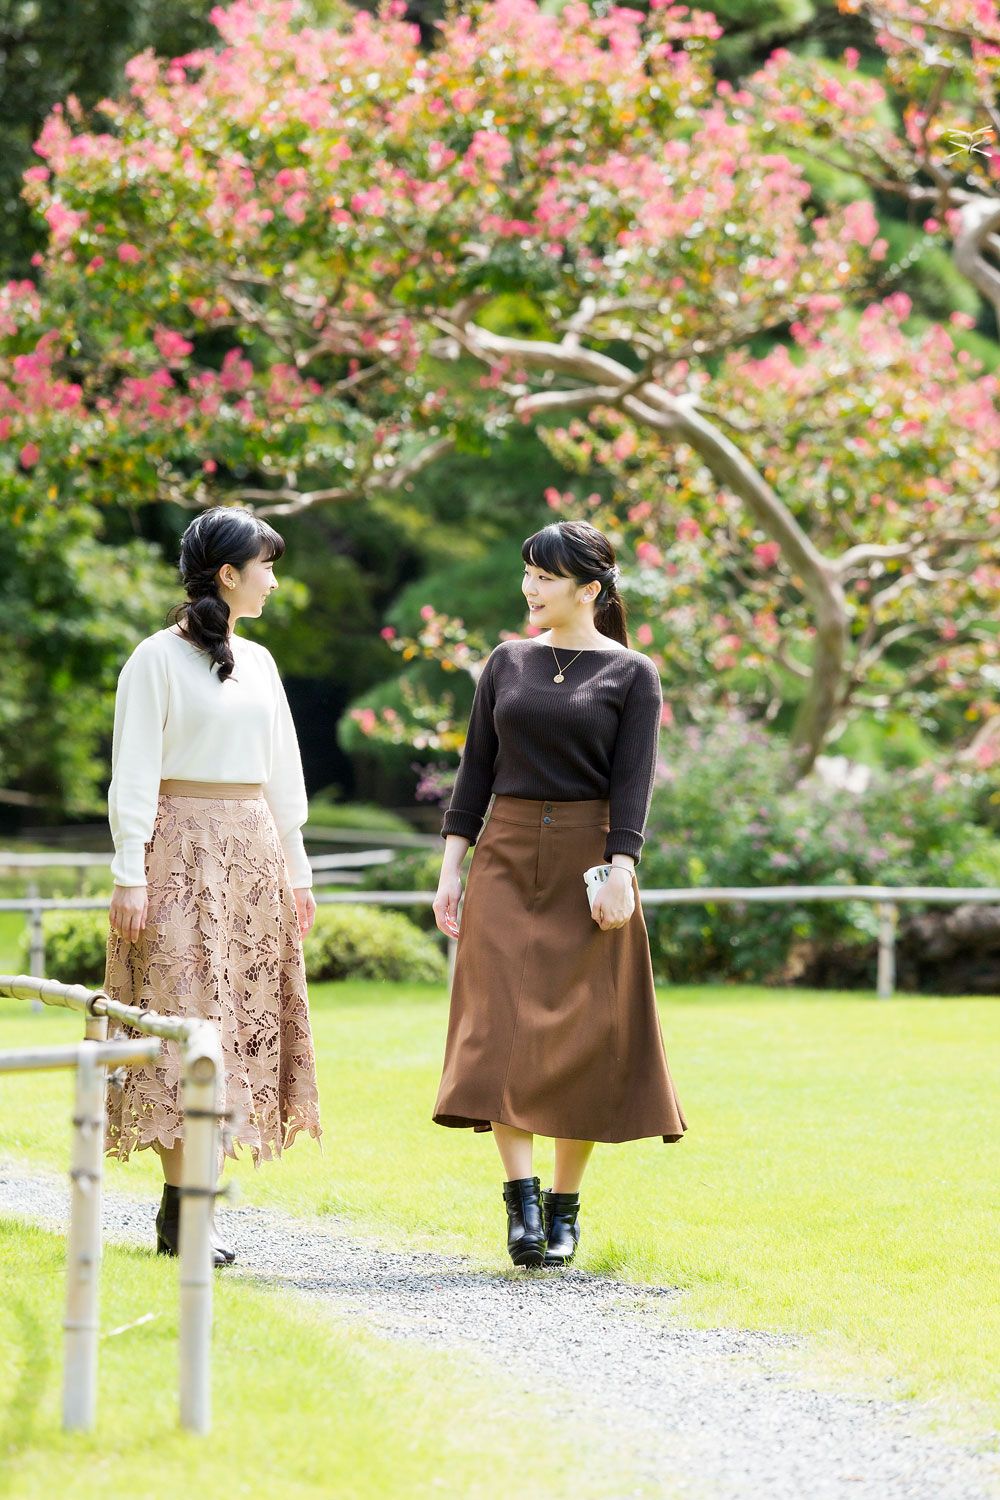 眞子さまのお誕生日に公開されたお写真。お2人とも長袖トップスにロングスカート、ショートブーツと似たアイテムをお召しになっているが、それぞれの個性がさりげなく光る（宮内庁提供）